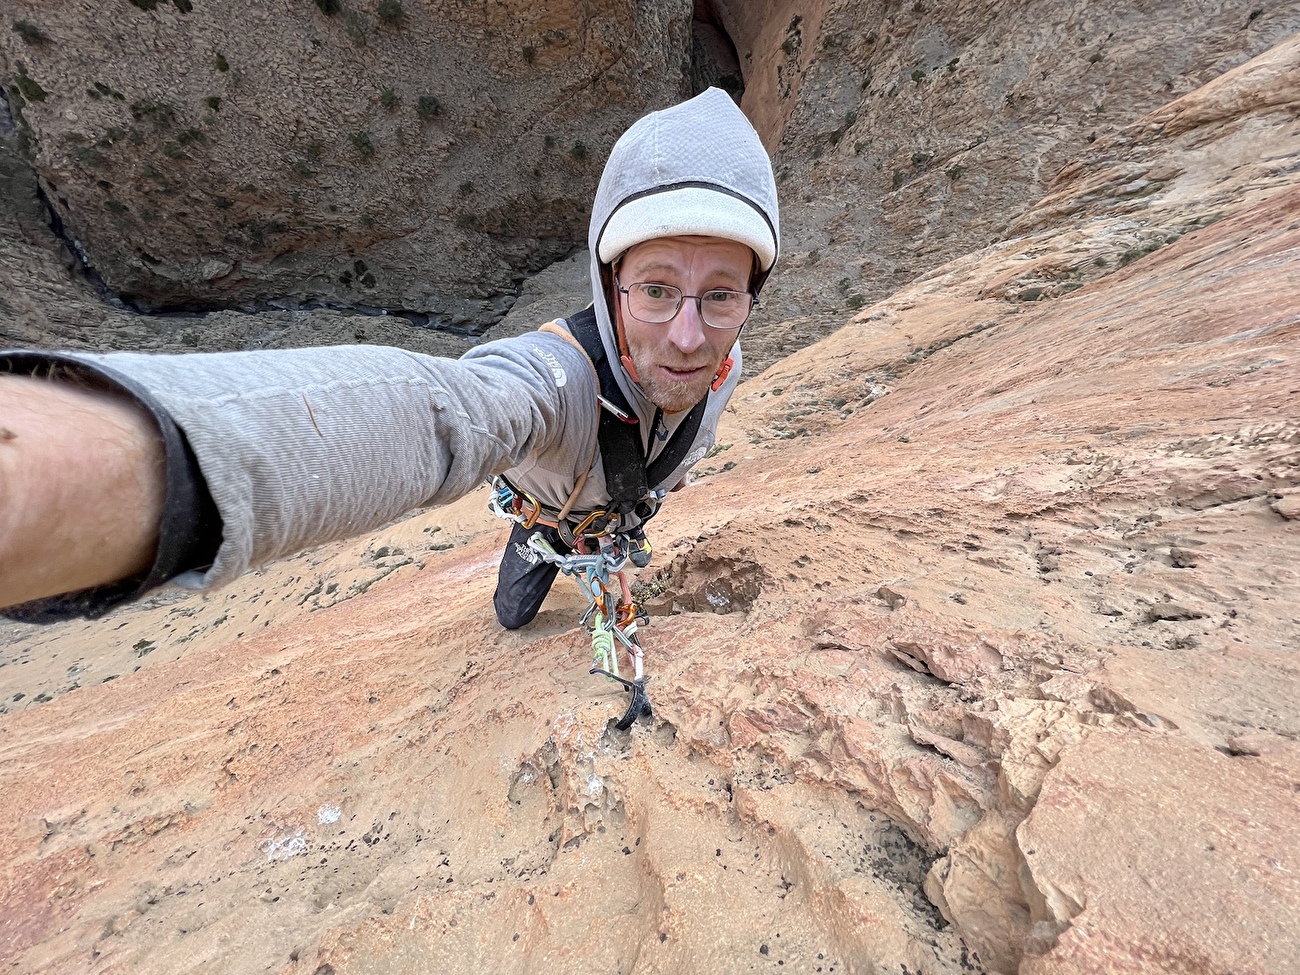 Gorges de Taghia Maroc, Iñaki Marco, Iker Pou - La première ascension du 'Bihotz Handi' (7c/320m) sur la face sud-ouest du Jebel Oujdad dans les gorges de Taghia, Maroc (Iñaki Marco, Iker Pou 04/2024)